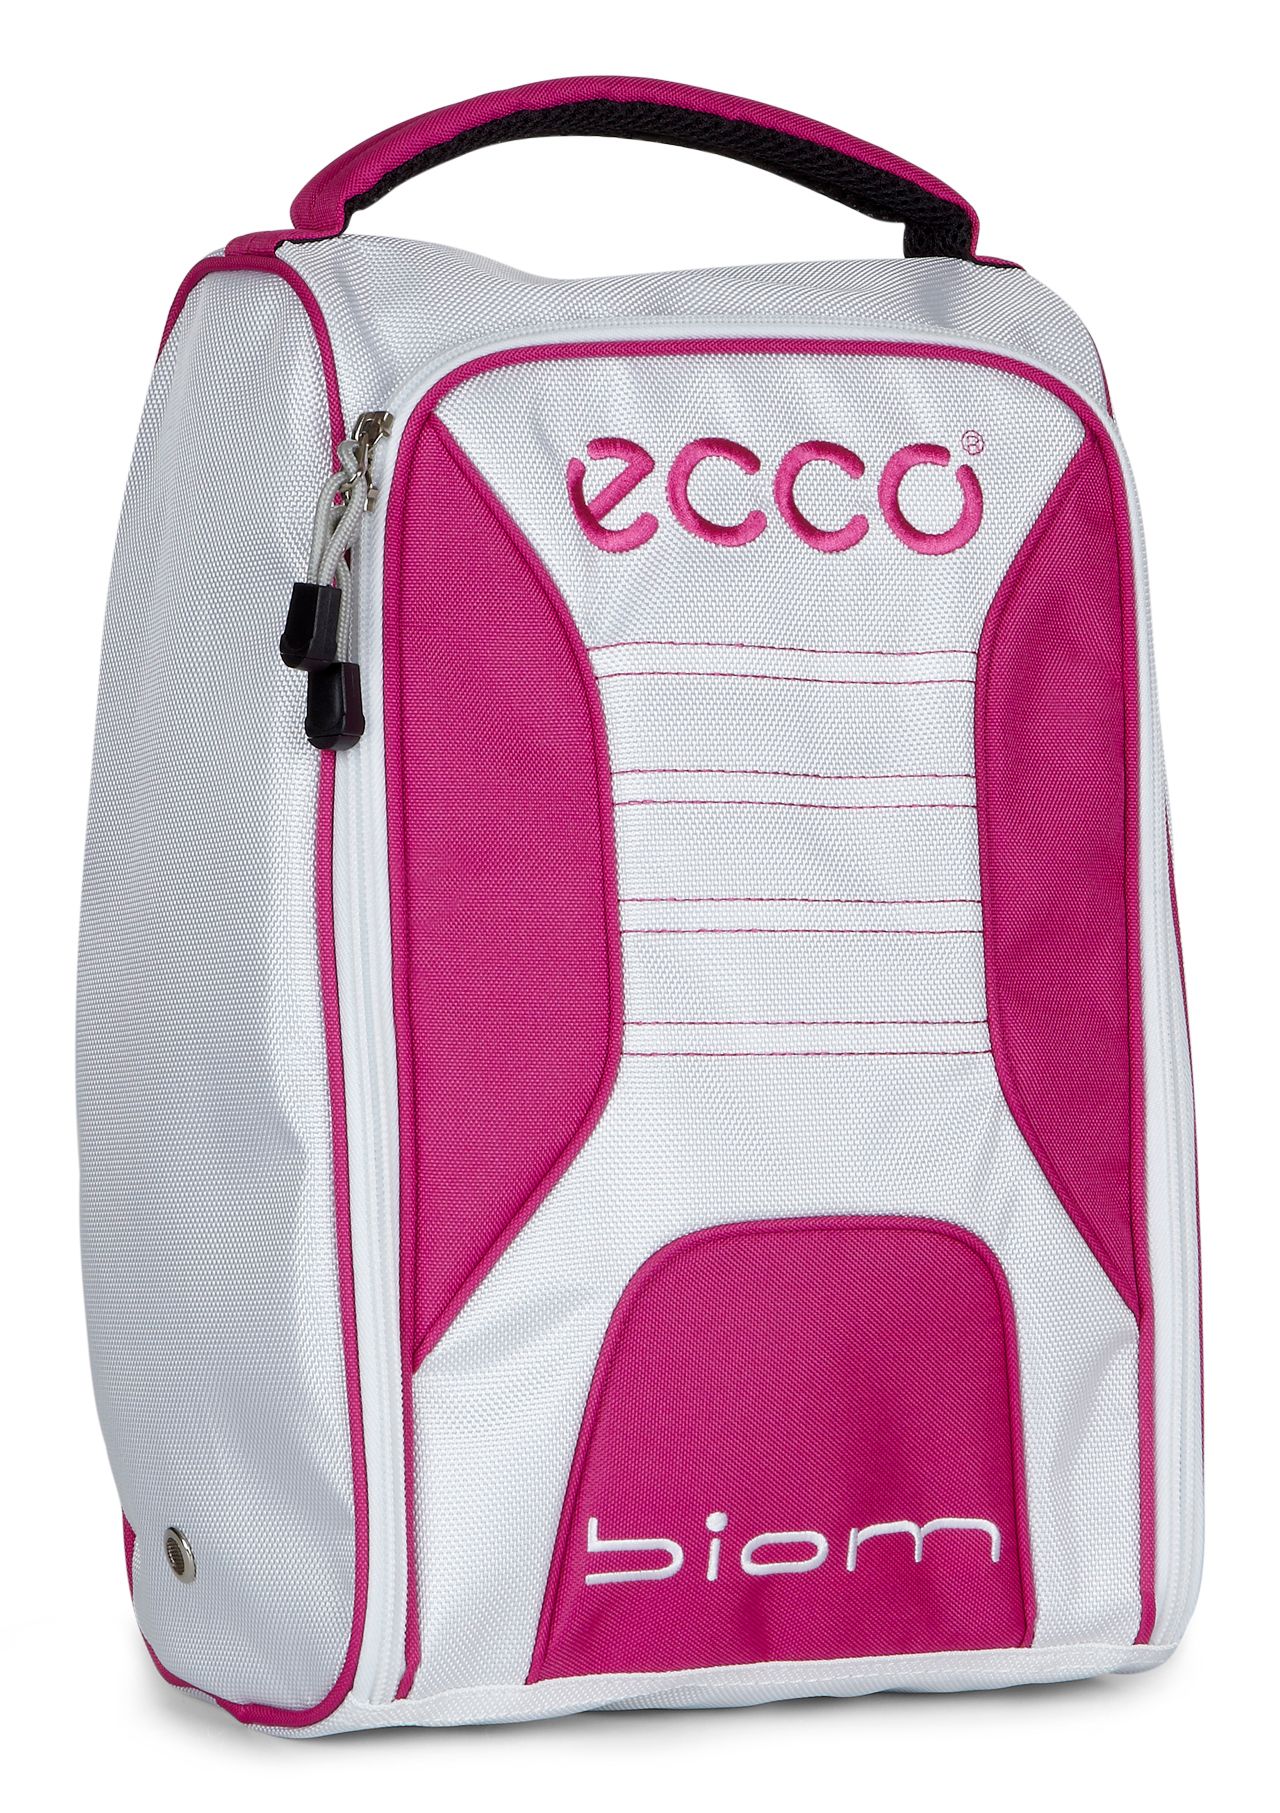 Golf Shoebag - ECCO.com